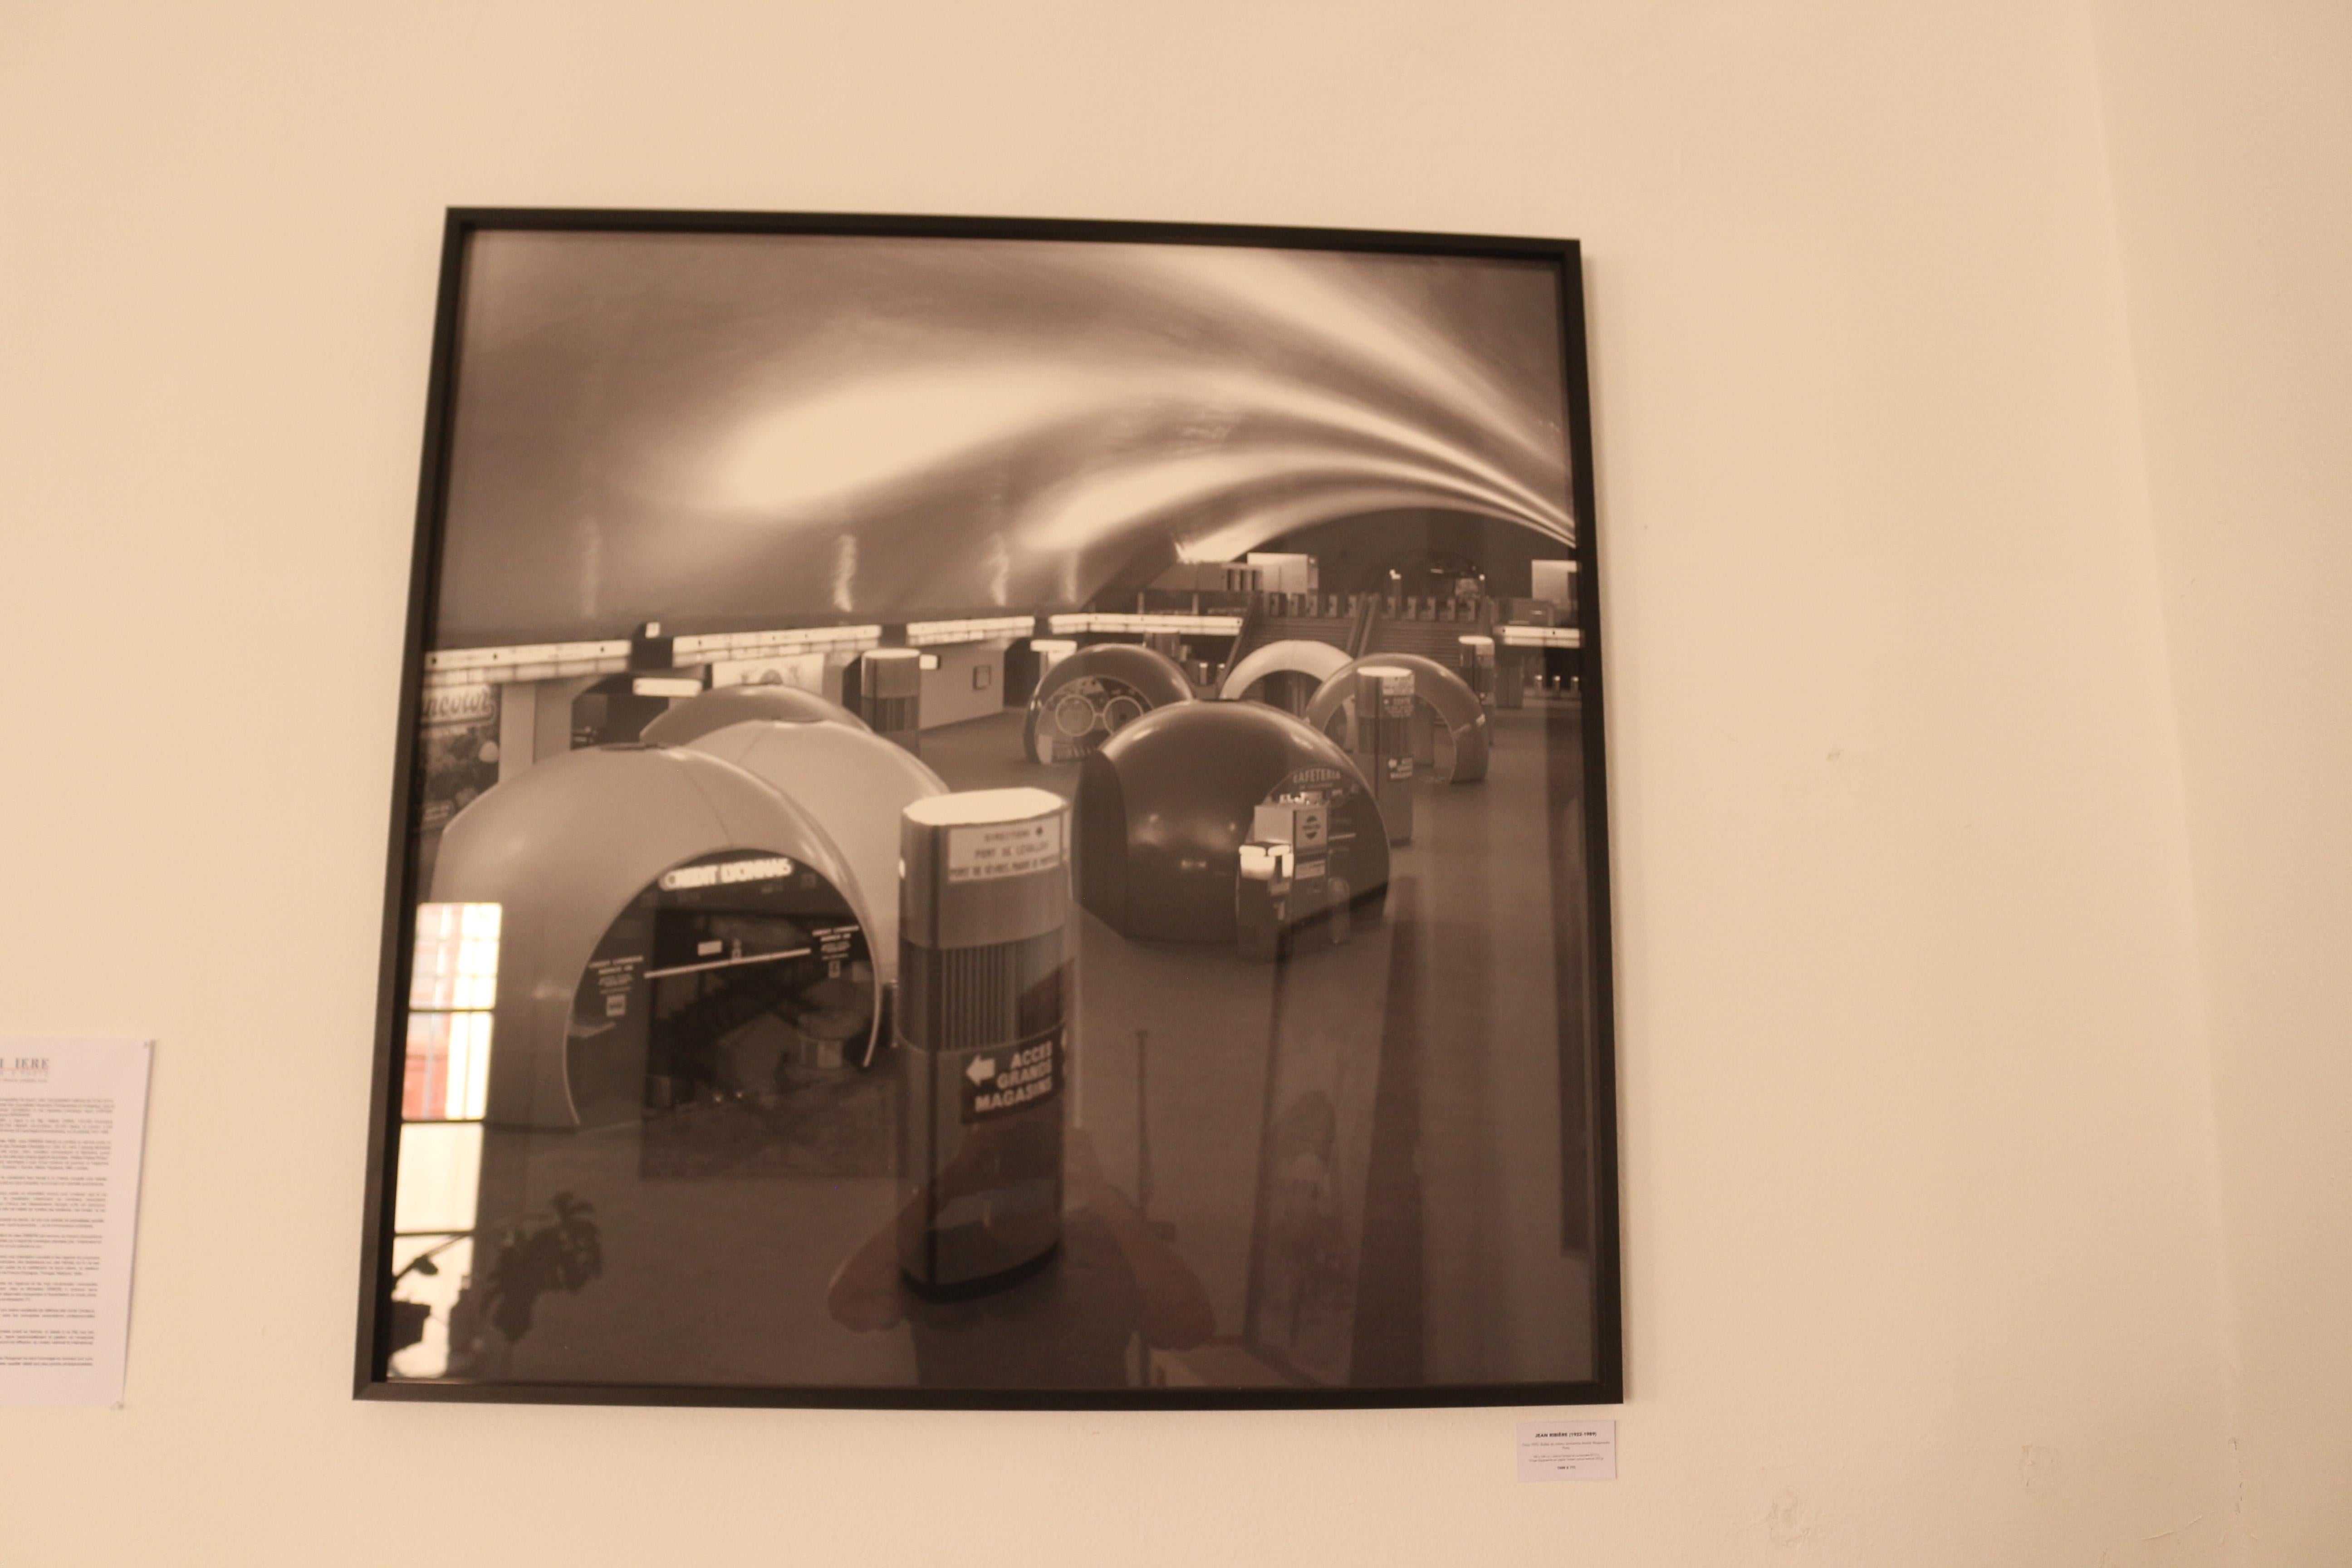 Blasen der Metro Architekt André Wogenscky Paris, um 1970.

100 x 100 cm / limitierte und nummerierte Auflage Nr. 1/12
Digitaldruck auf strukturiertem Baumwoll-Feinkarton 320 gr. 

 Zertifizierung: Handsigniert und nummeriert.

 Rahmen: